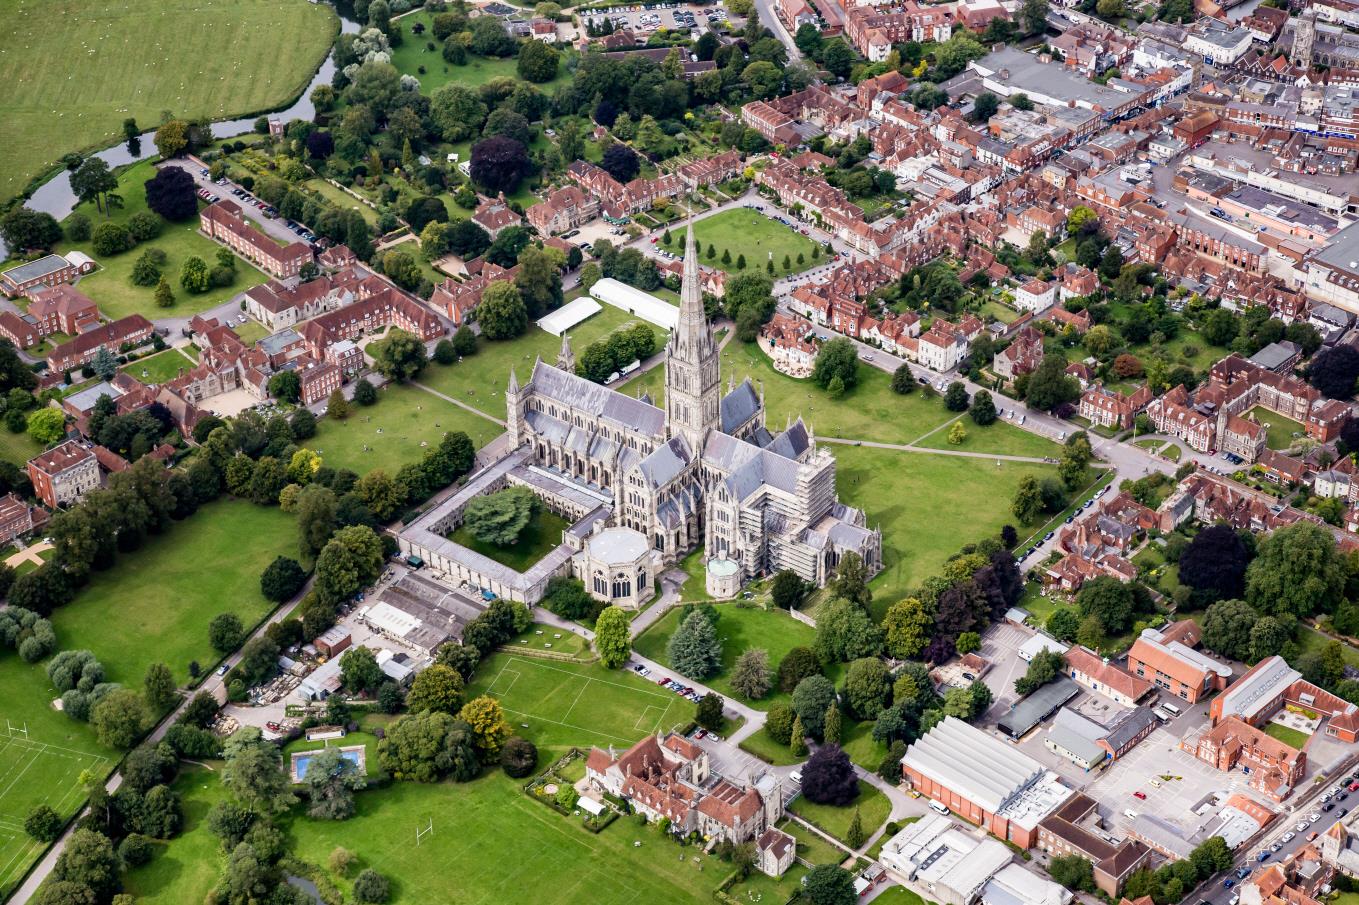 솔즈베리 대성당  Salisbury Cathedral